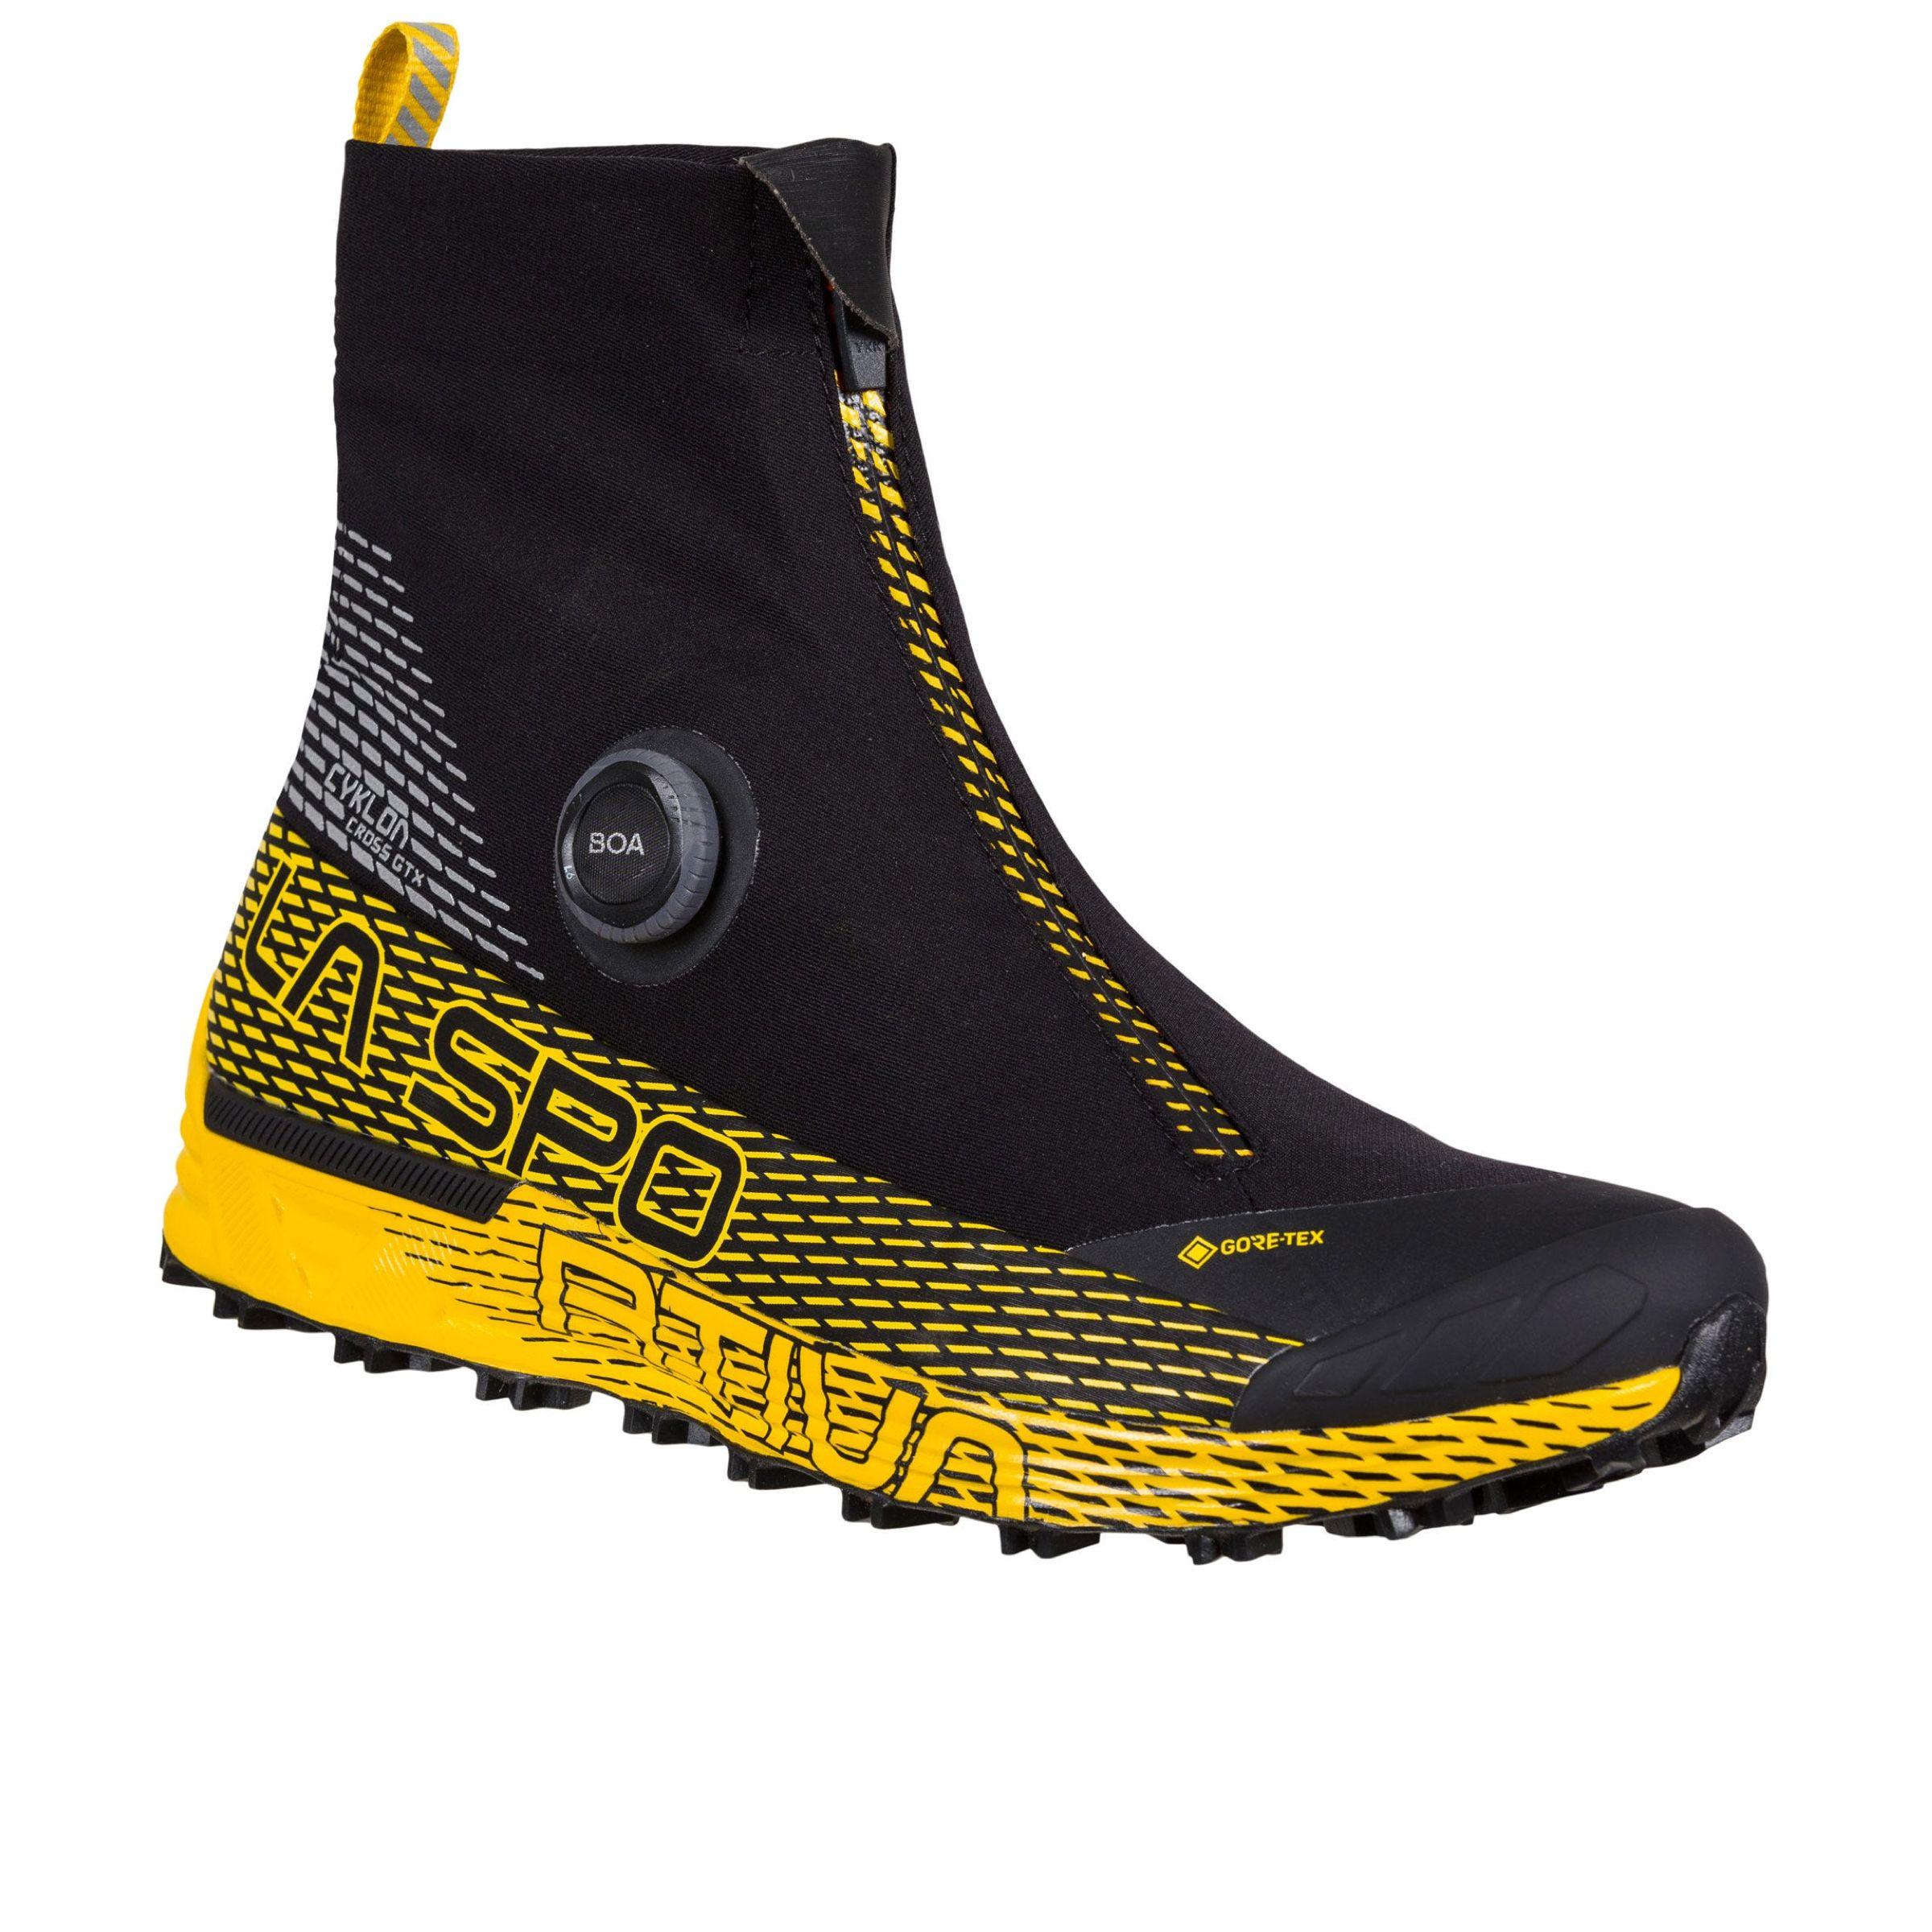 La Sportiva | Scarpe Cyklon Cross GTX Uomo Black/Yellow - Fabbrica Ski Sises